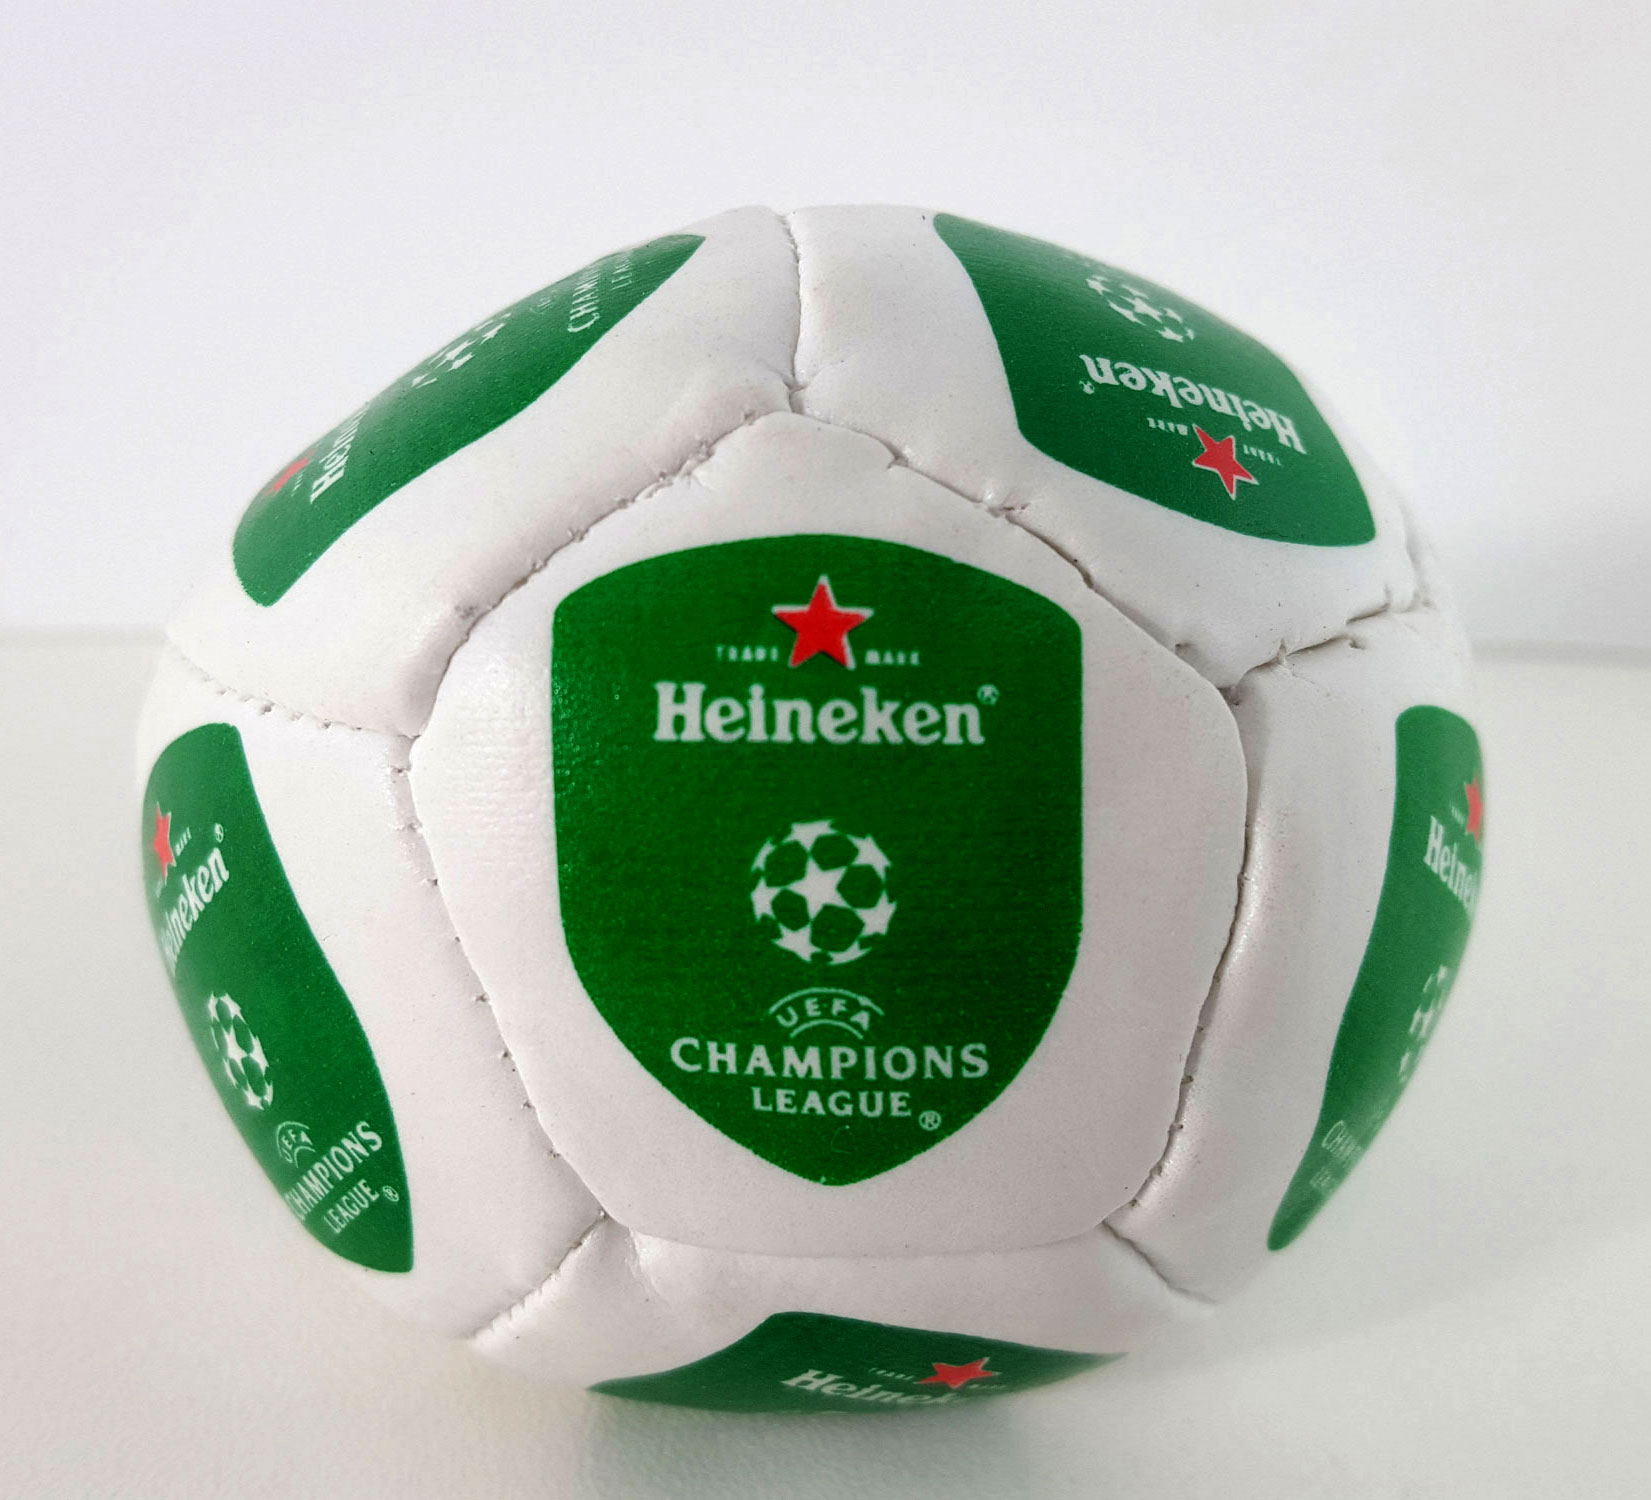 Heineken Bier Champions League Fussball Ball